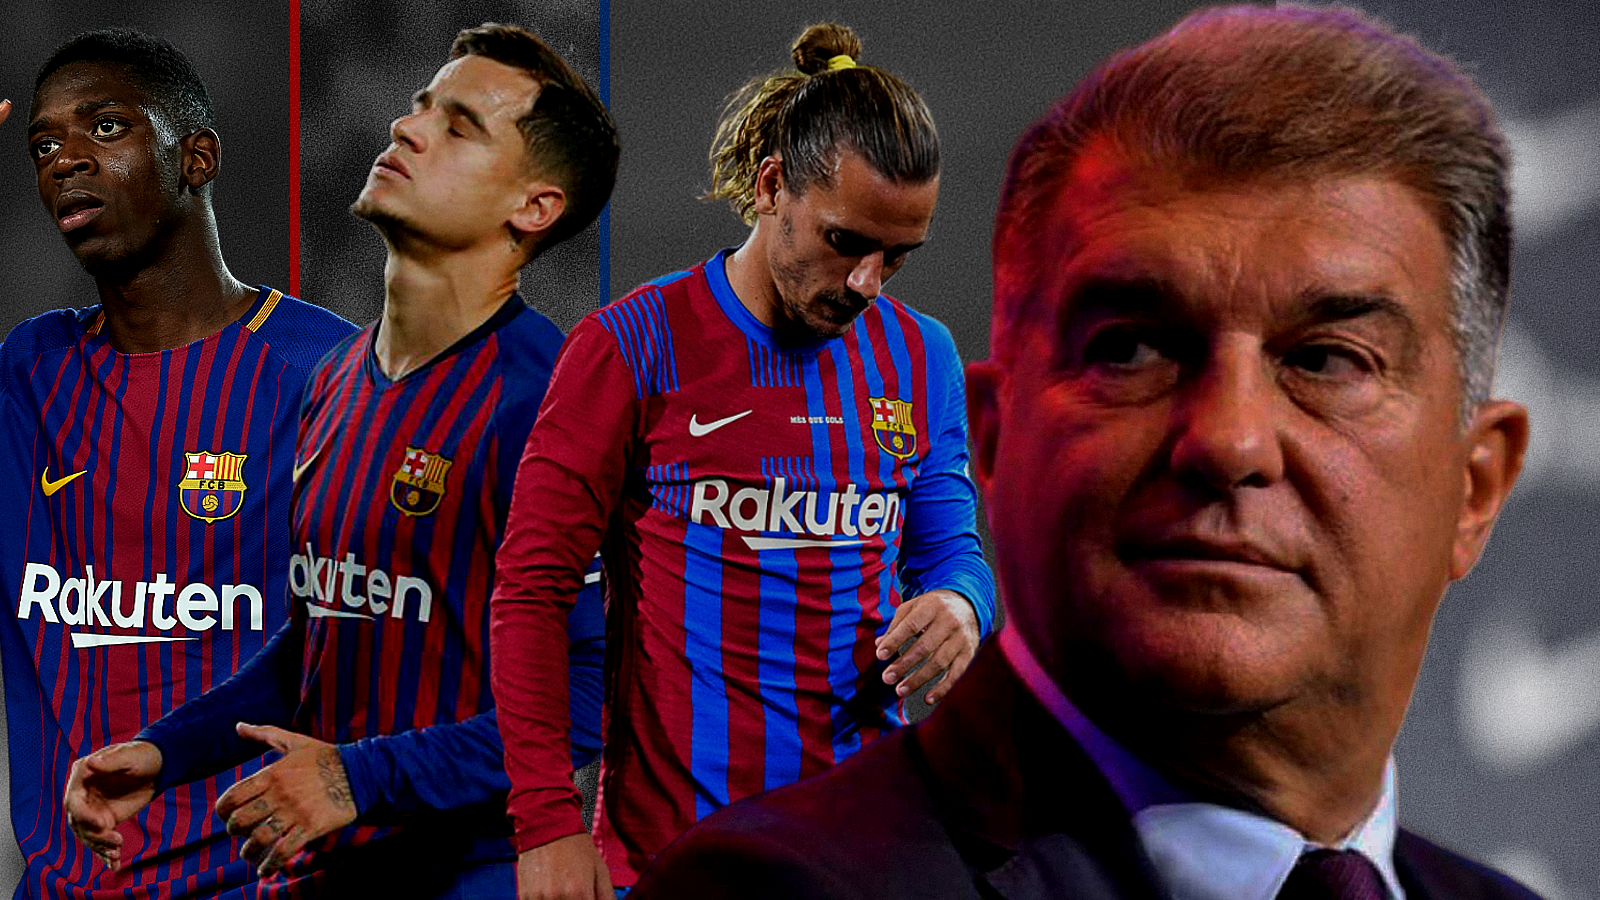 El acuerdo entre el FC Barcelona y Puma, cada vez más lejano